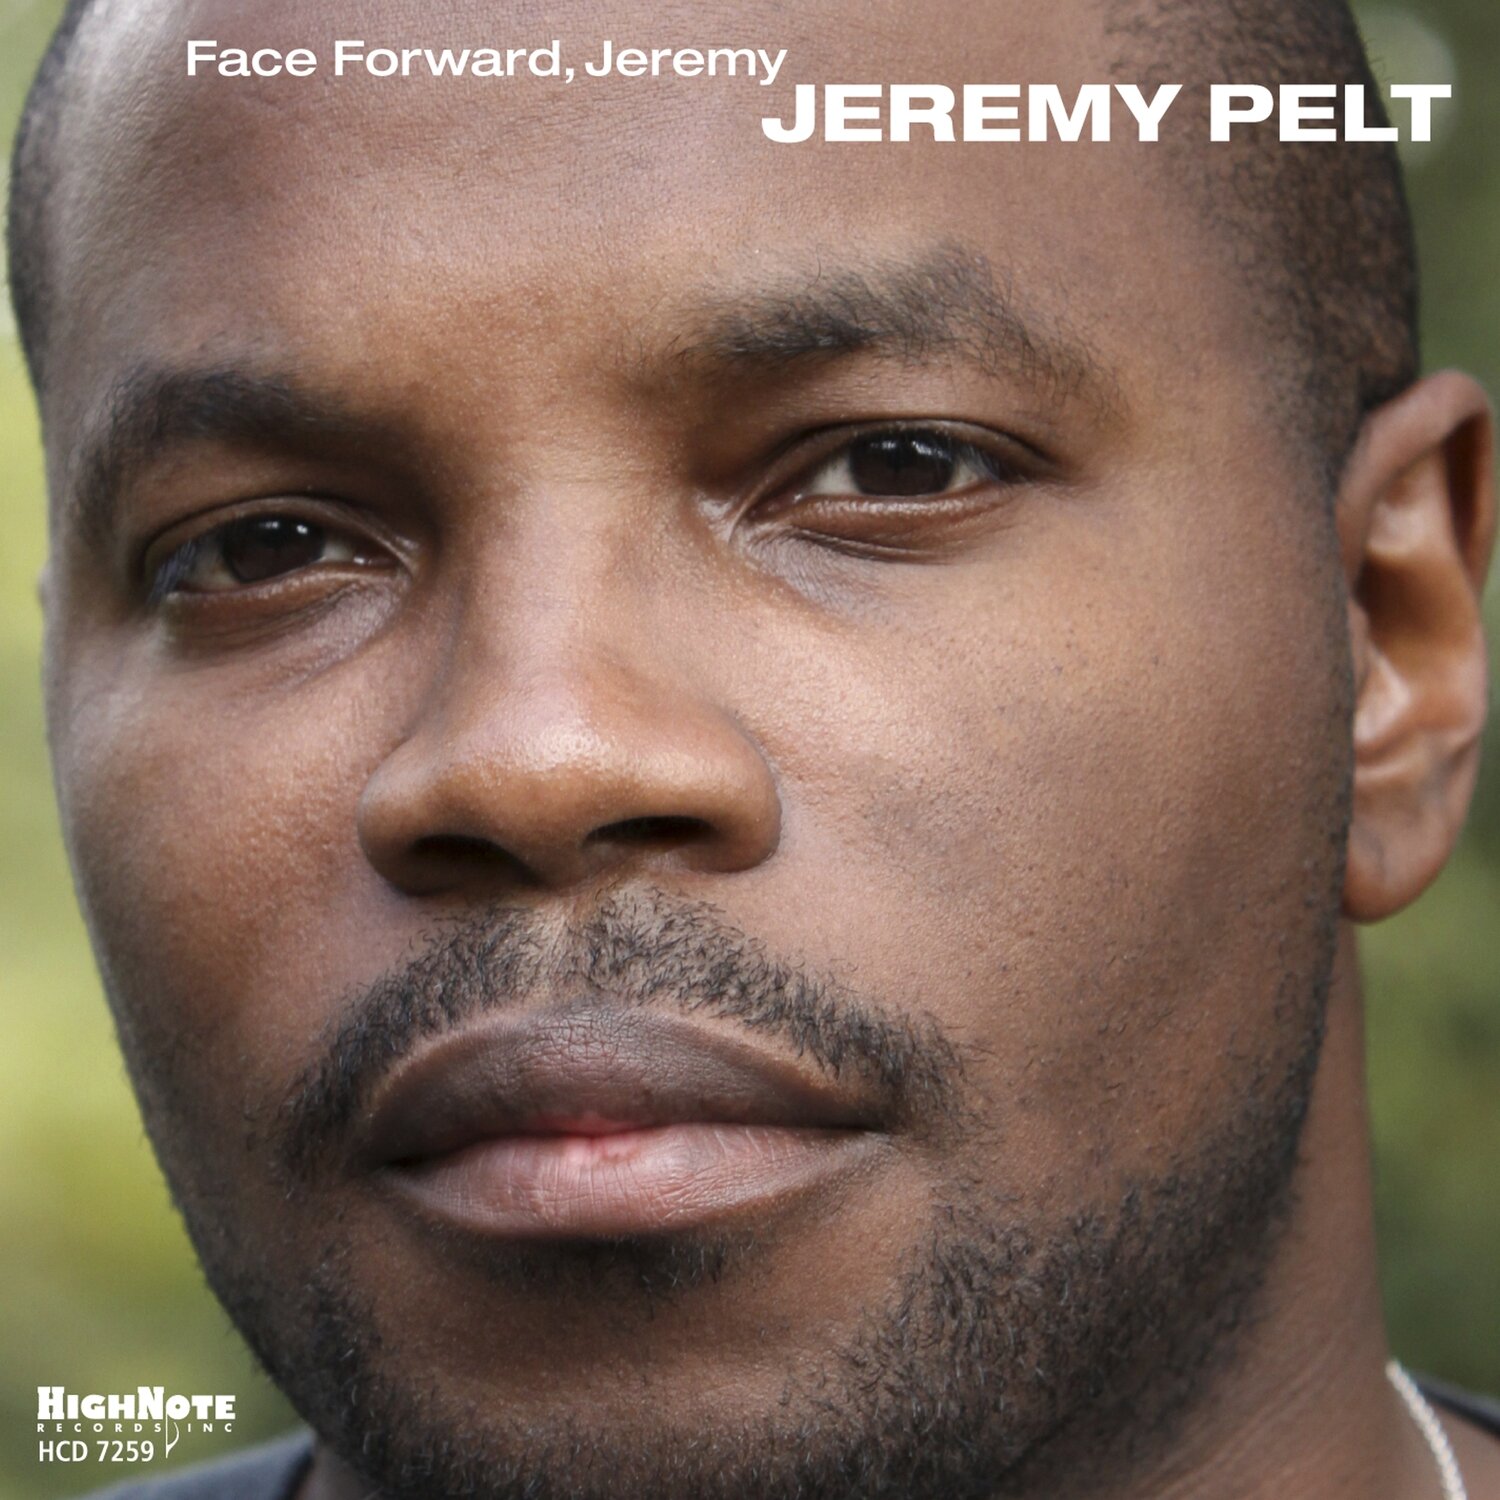 JEREMY PELT - Face Forward, Jeremy